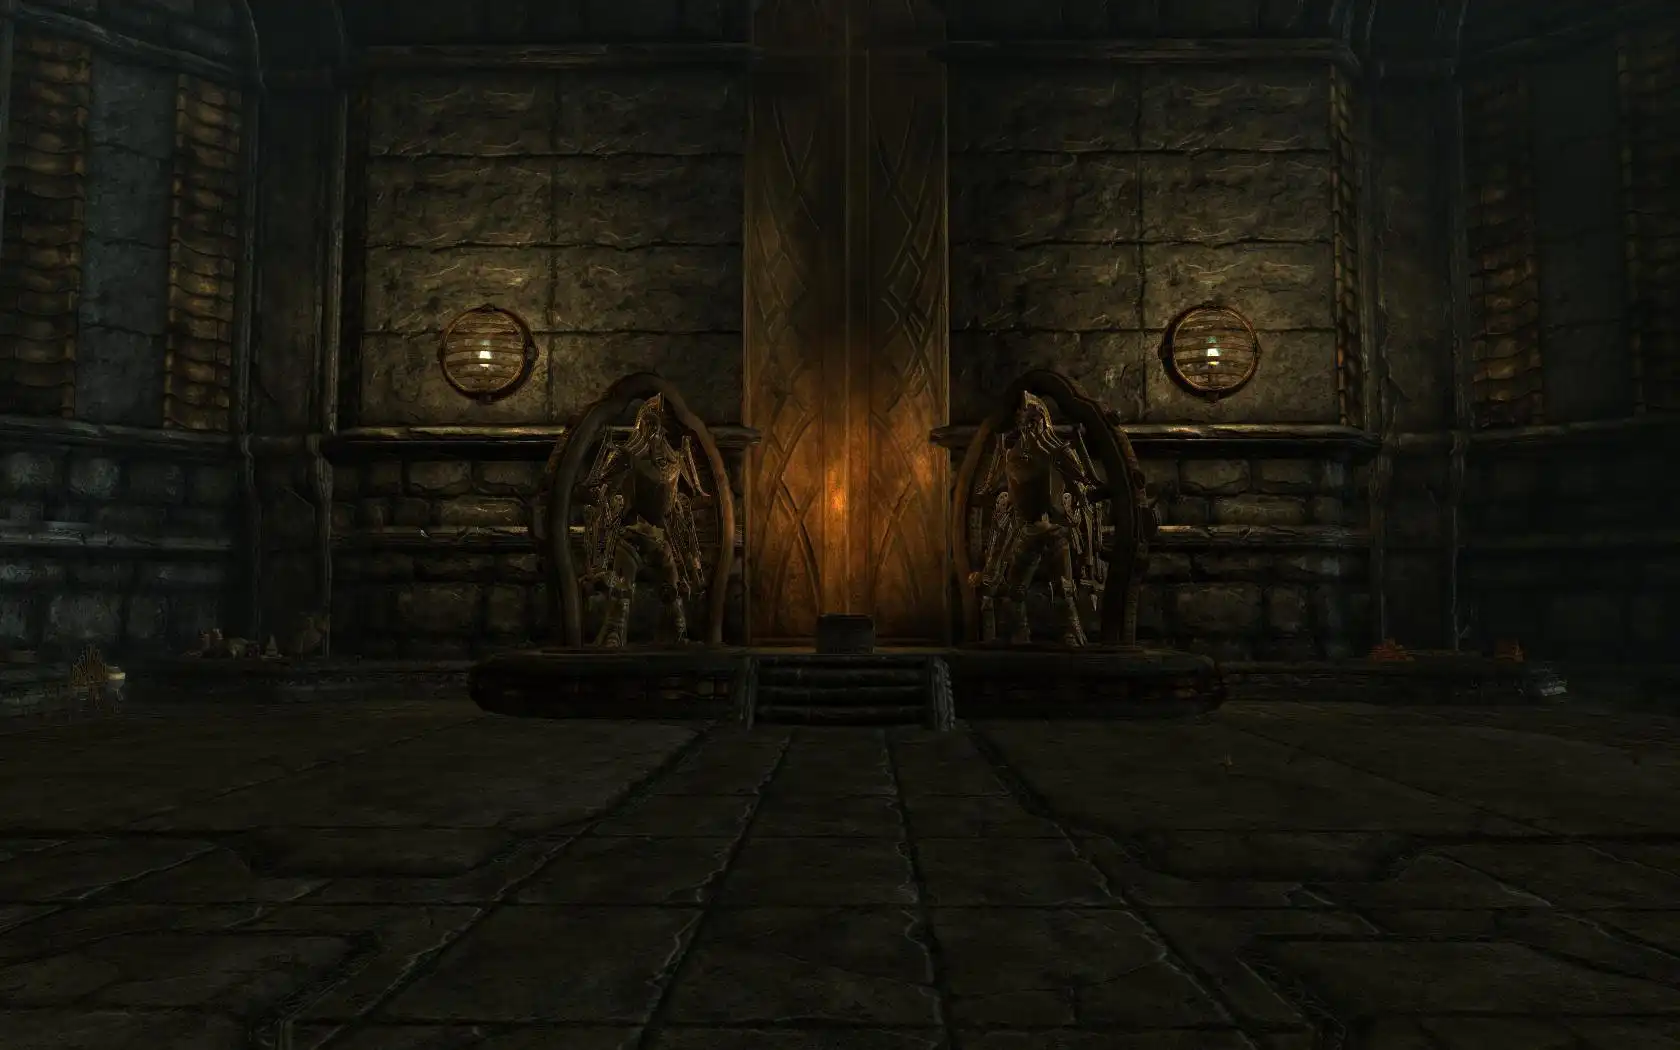 הורד כלי אינטרנט או אפליקציית אינטרנט The Elder Scrolls V: The Last Dwemer שיפעל בלינוקס באופן מקוון